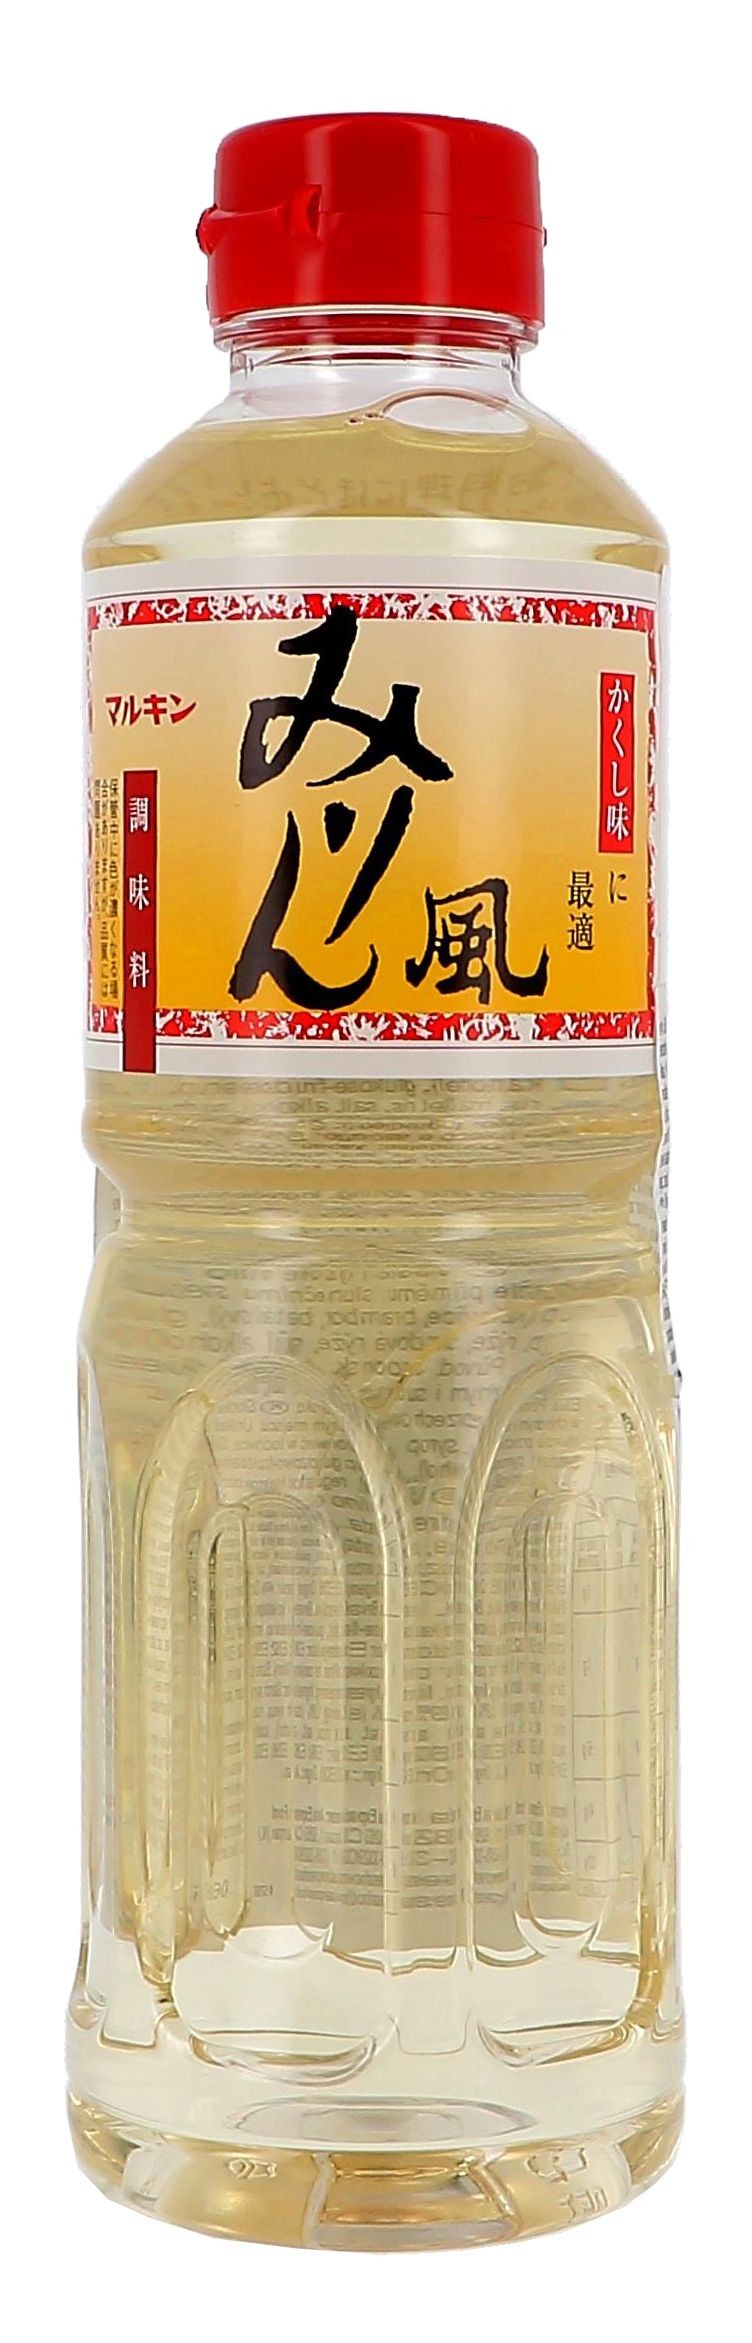 Marukin Mirin Fu zoete Japanse rijstwijn 500ml PET fles